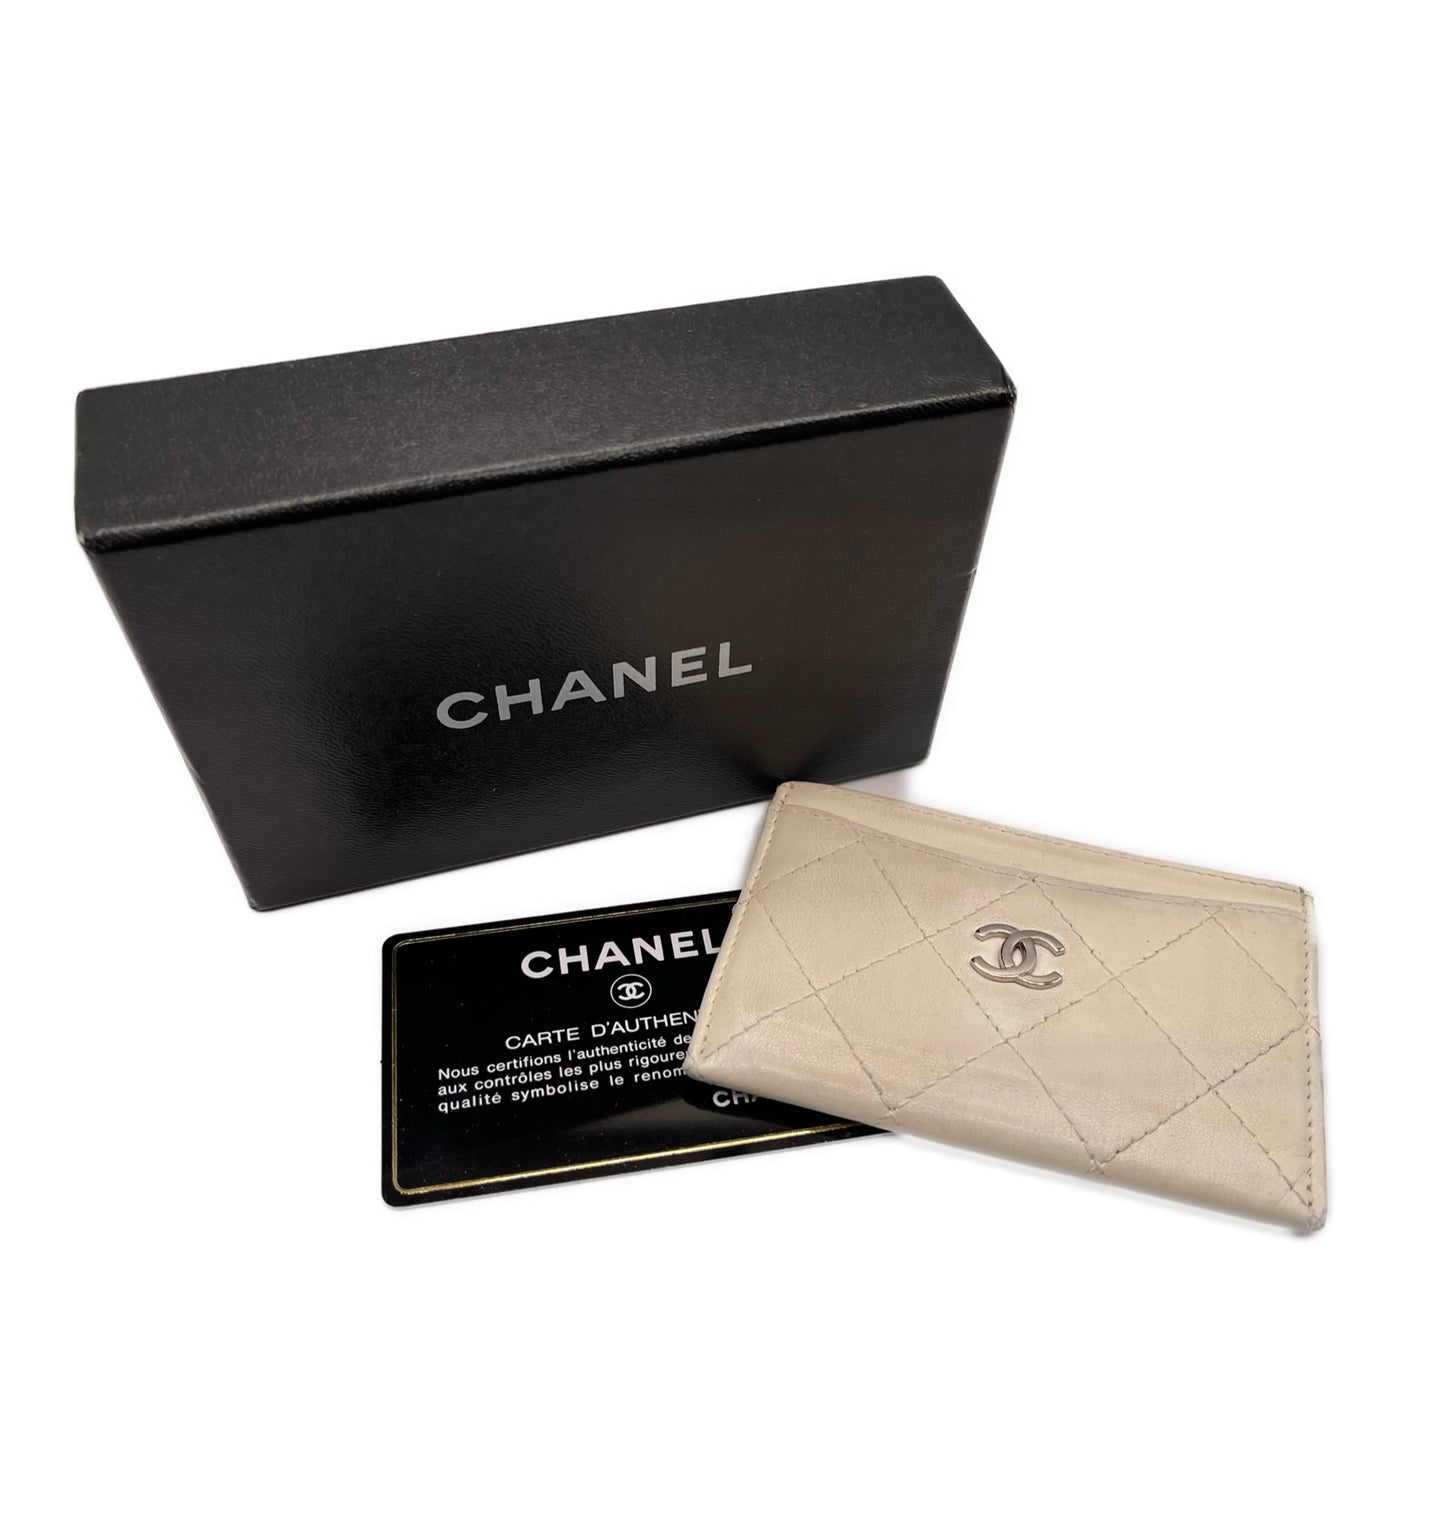 Chanel card holder porta carte bianco completo usato